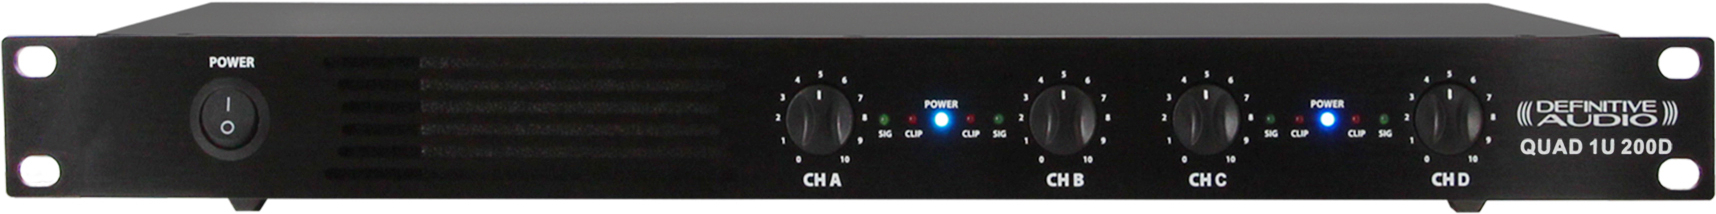 Definitive Audio Quad 1u 200d - Etapa final de potencia de varios canales - Main picture